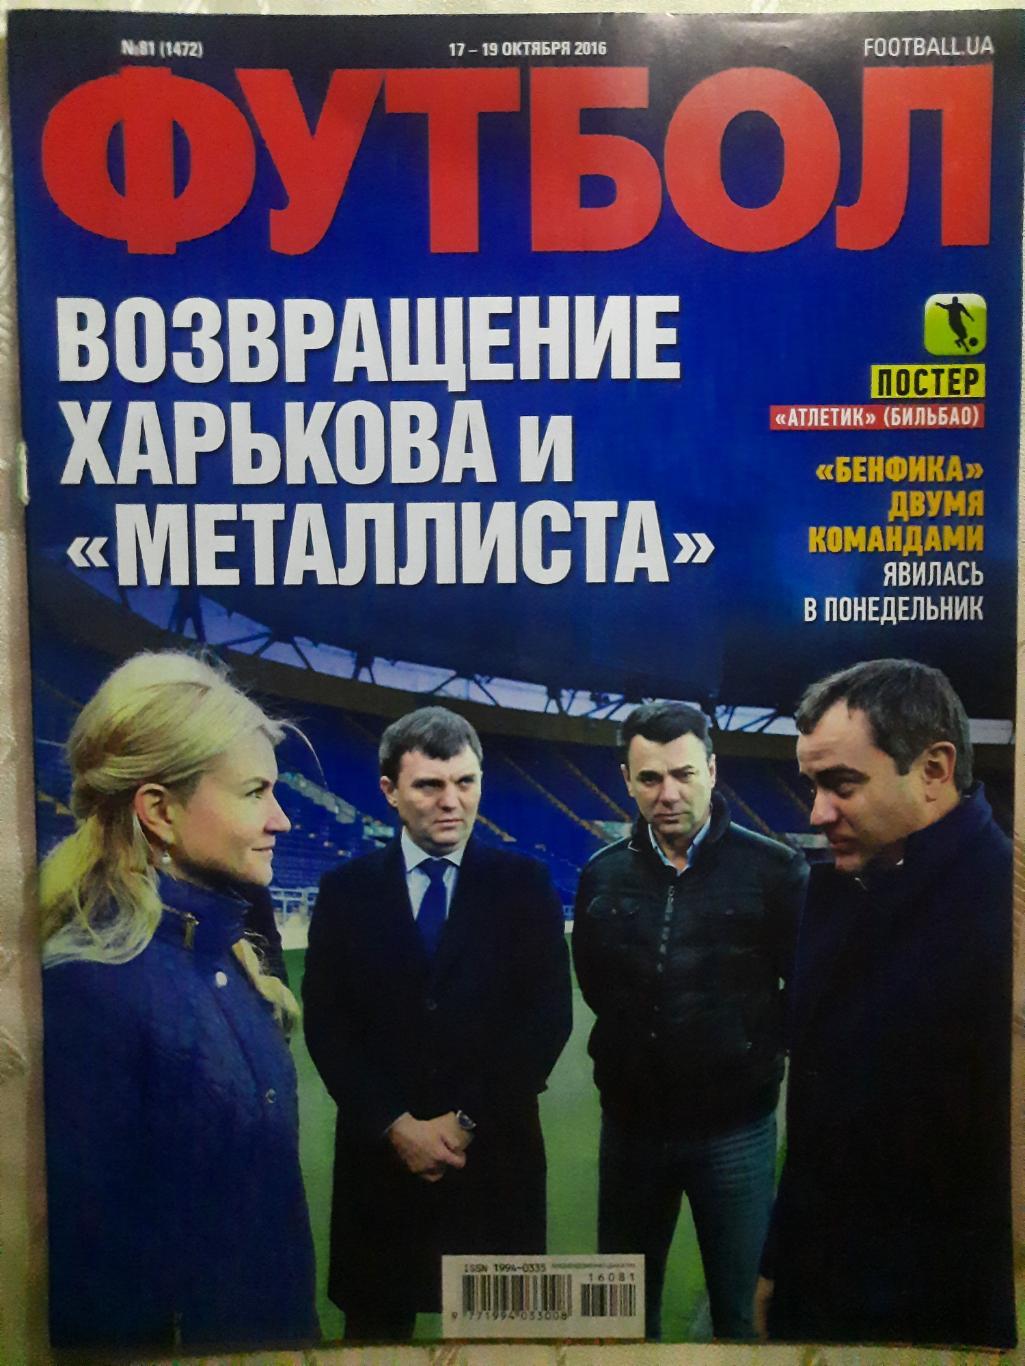 еженедельник Футбол #80 2016, постер: Атлетик Б...